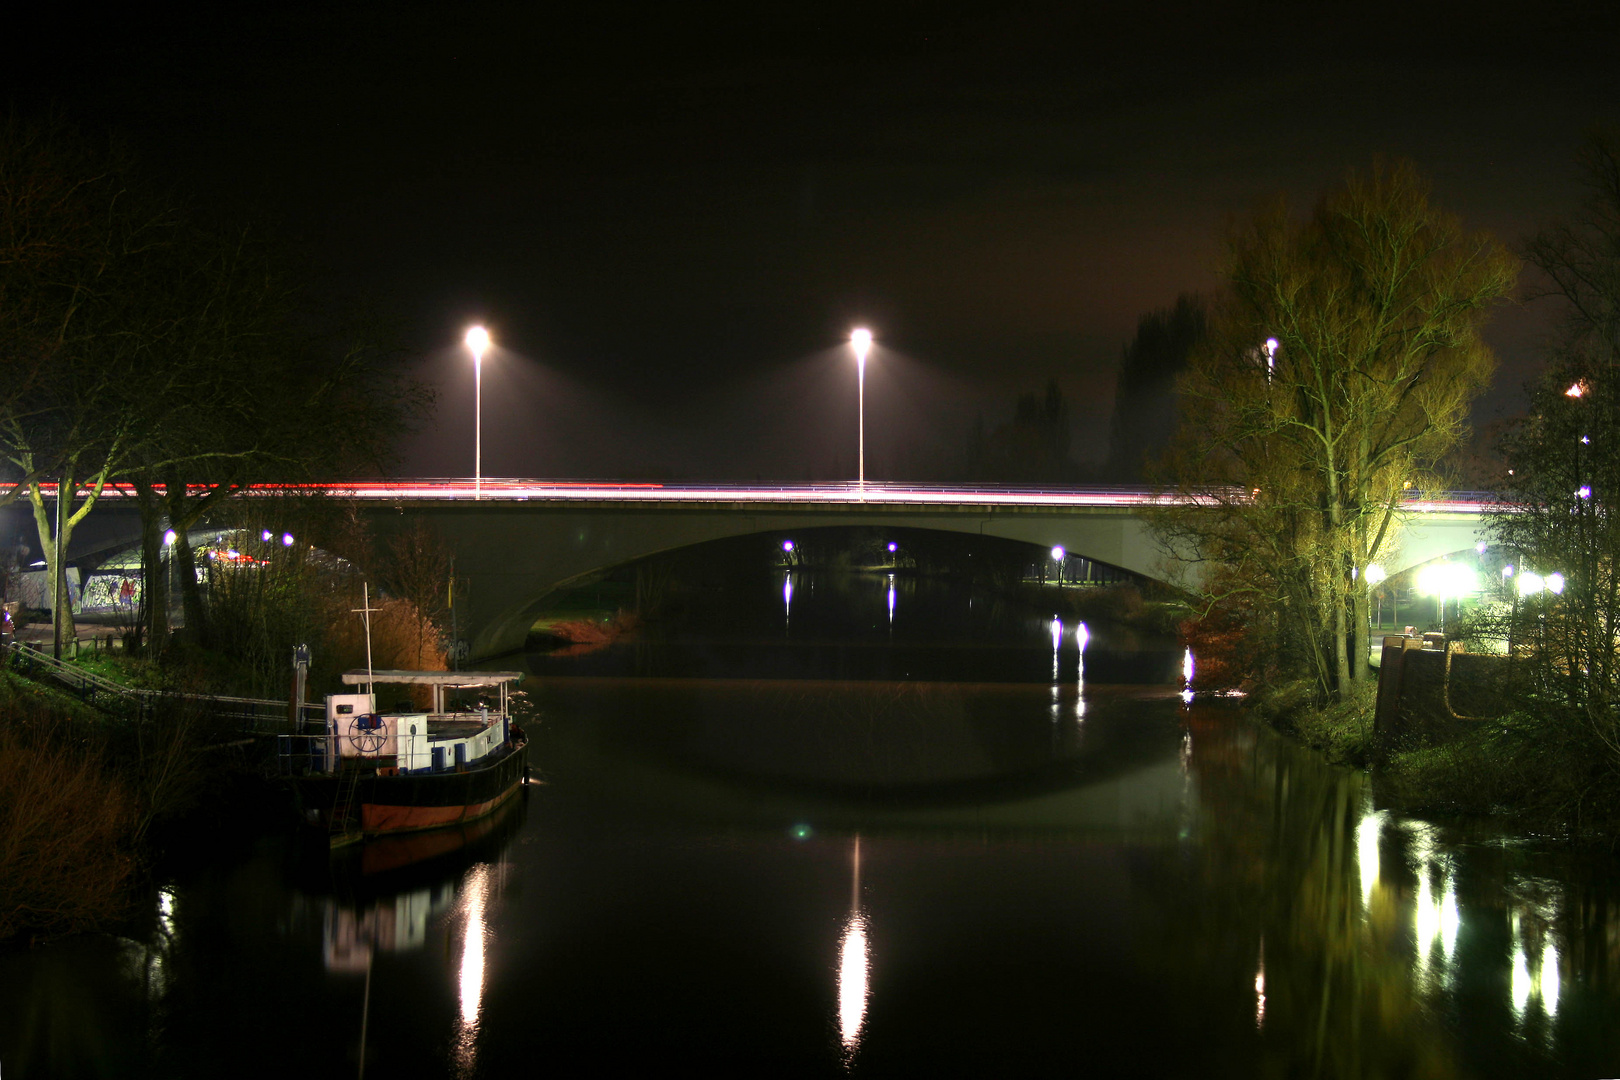 Emsbrücke in Rheine by Night